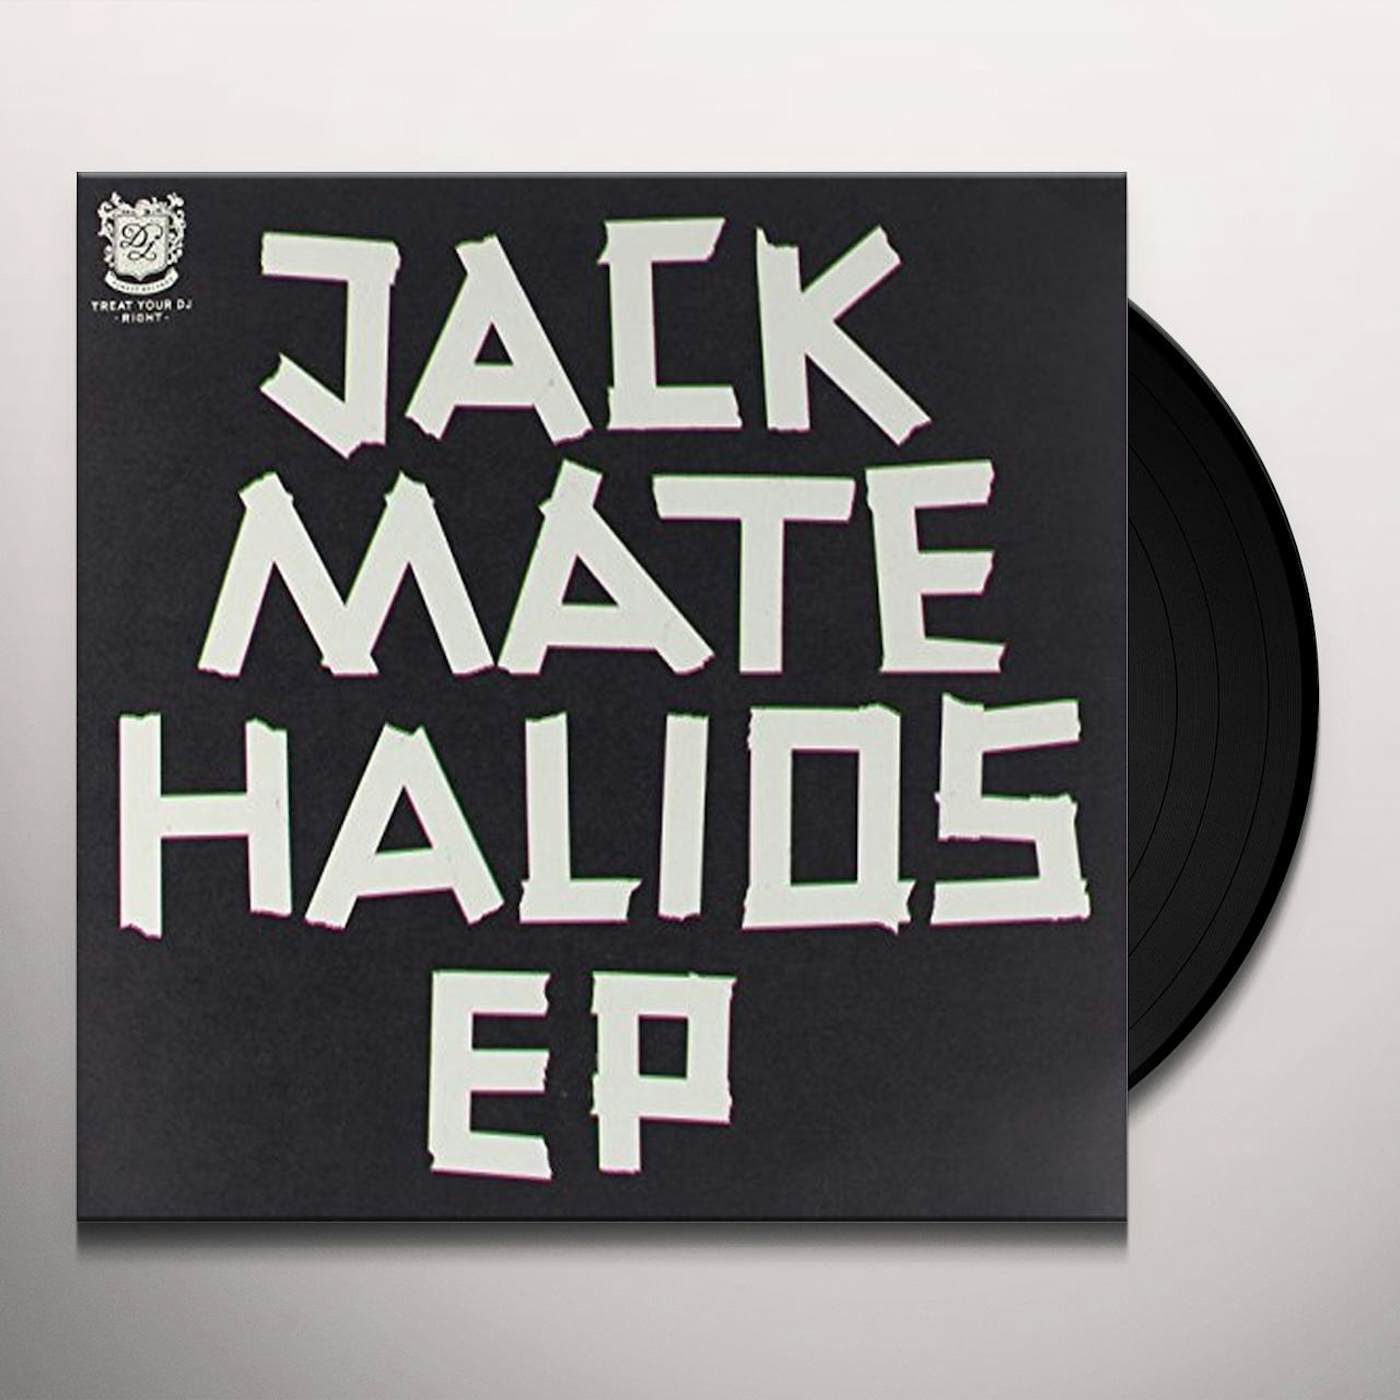 Jackmate Halios Vinyl Record